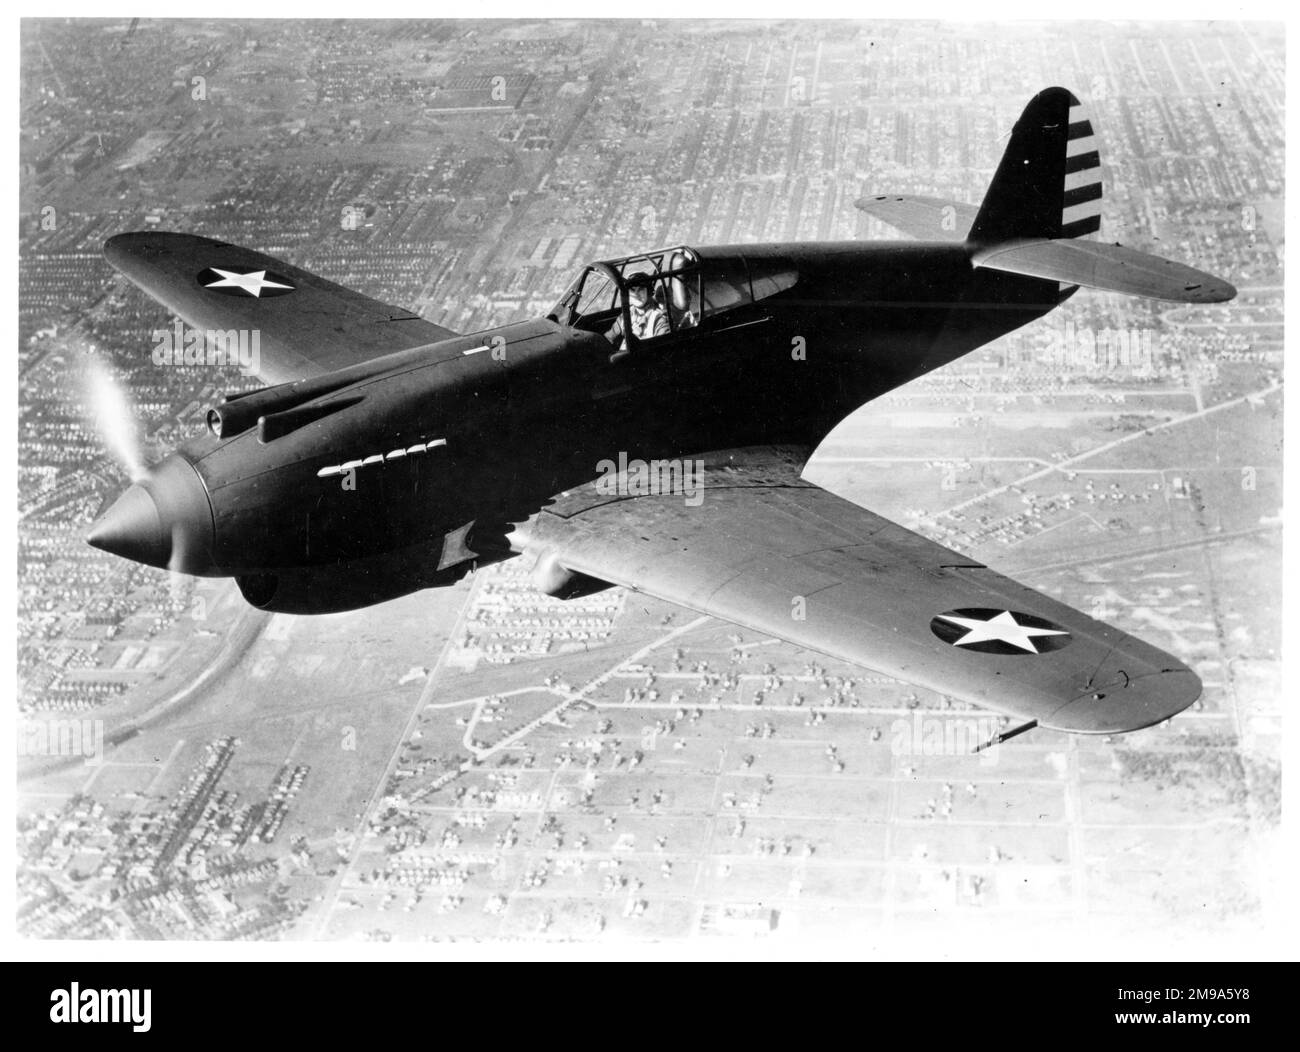 United States Army Air Corps (USAAC) – Curtiss P-40 (Modell 81). Der erste Produktionsstandard, mit Sternen und Streifen auf beiden Flügeln geliefert, ungewöhnlich. Da dieses Flugzeug unbewaffnet ist, ist es möglich, dass es sich um 40-326 handelt, eine P-40, die von Boeing in ein unbewaffnetes Fotoaufklärungsflugzeug umgewandelt wurde, rückwirkend mit der Bezeichnung P-40A versehen. Stockfoto